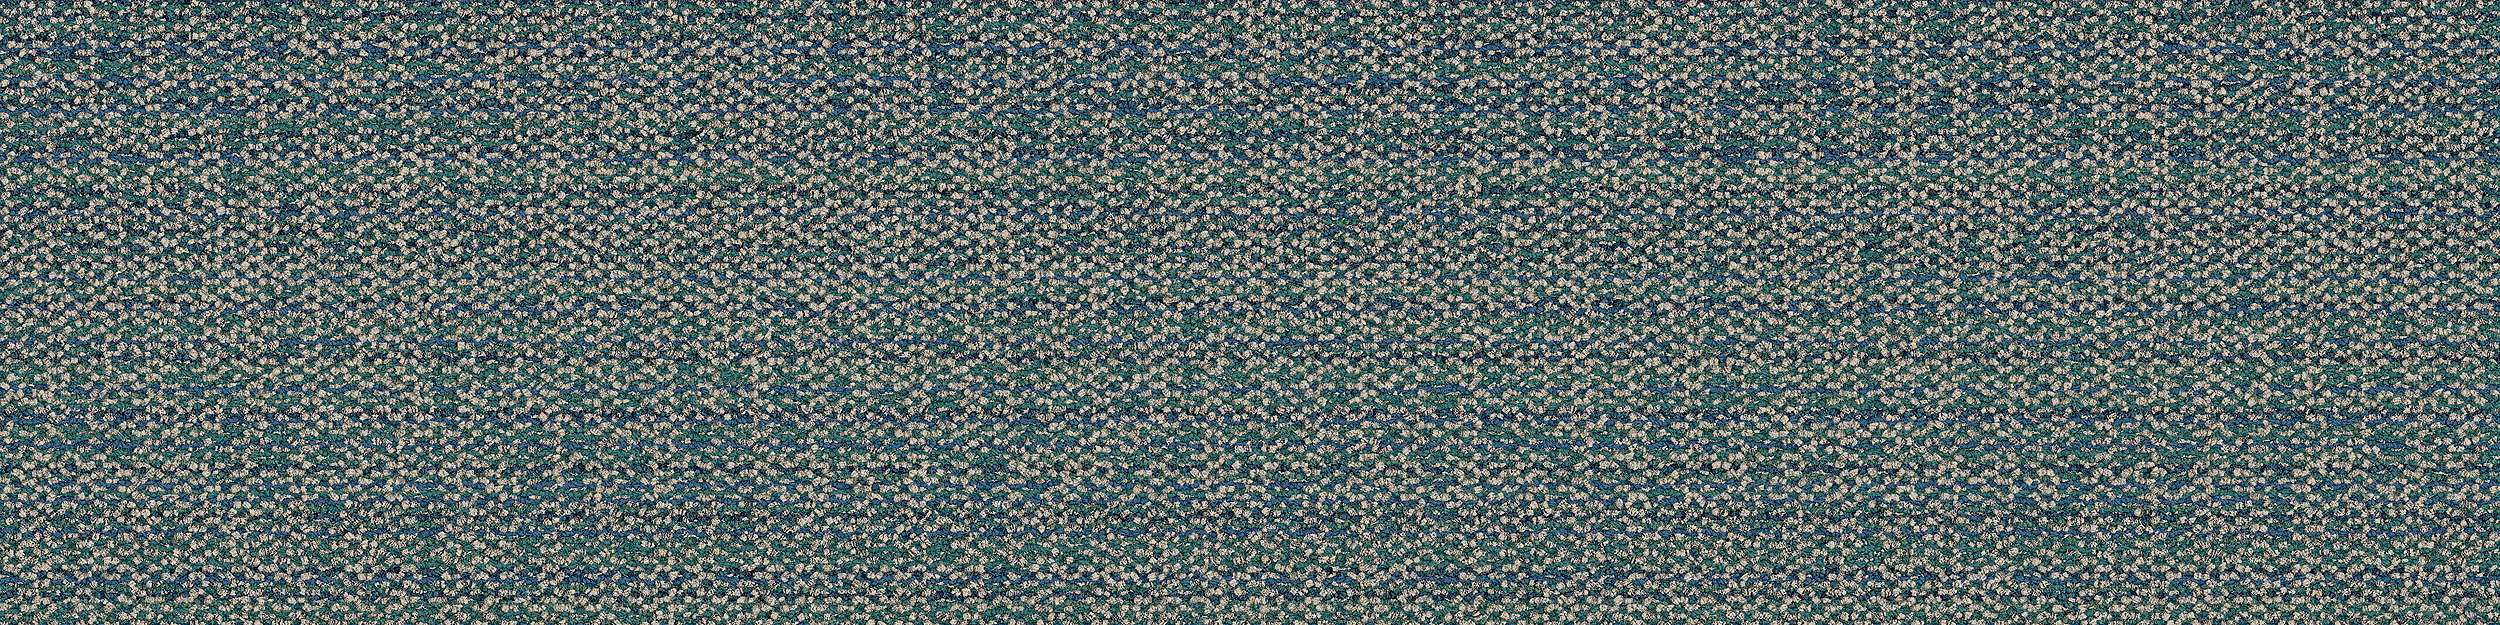 Diddley Dot Carpet Tile in Tourmaline image number 13